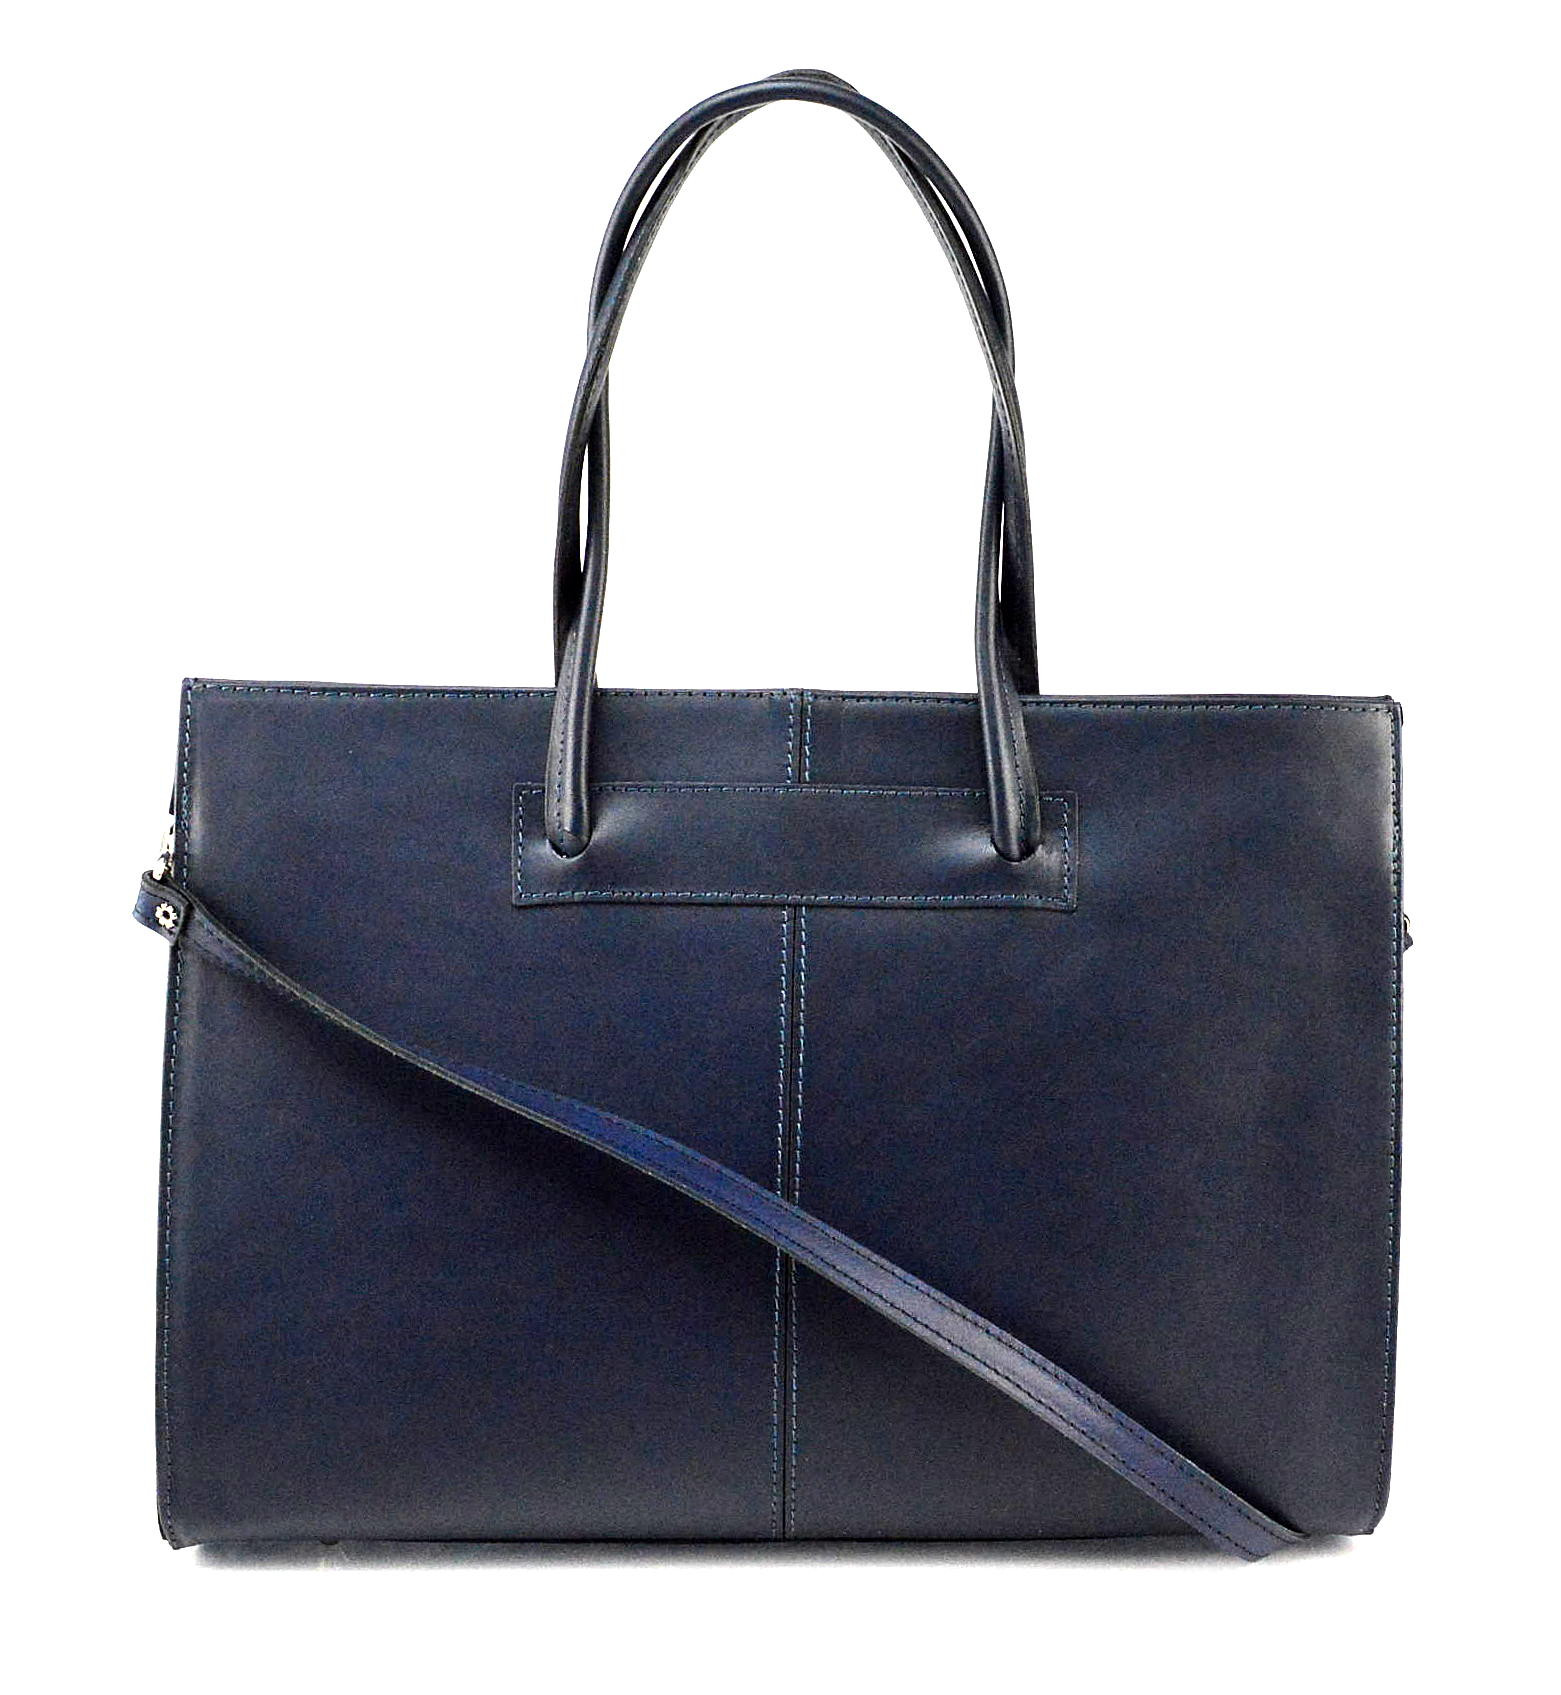 Prostorná stylová tmavě modrá kožená kabelka přes rameno Business